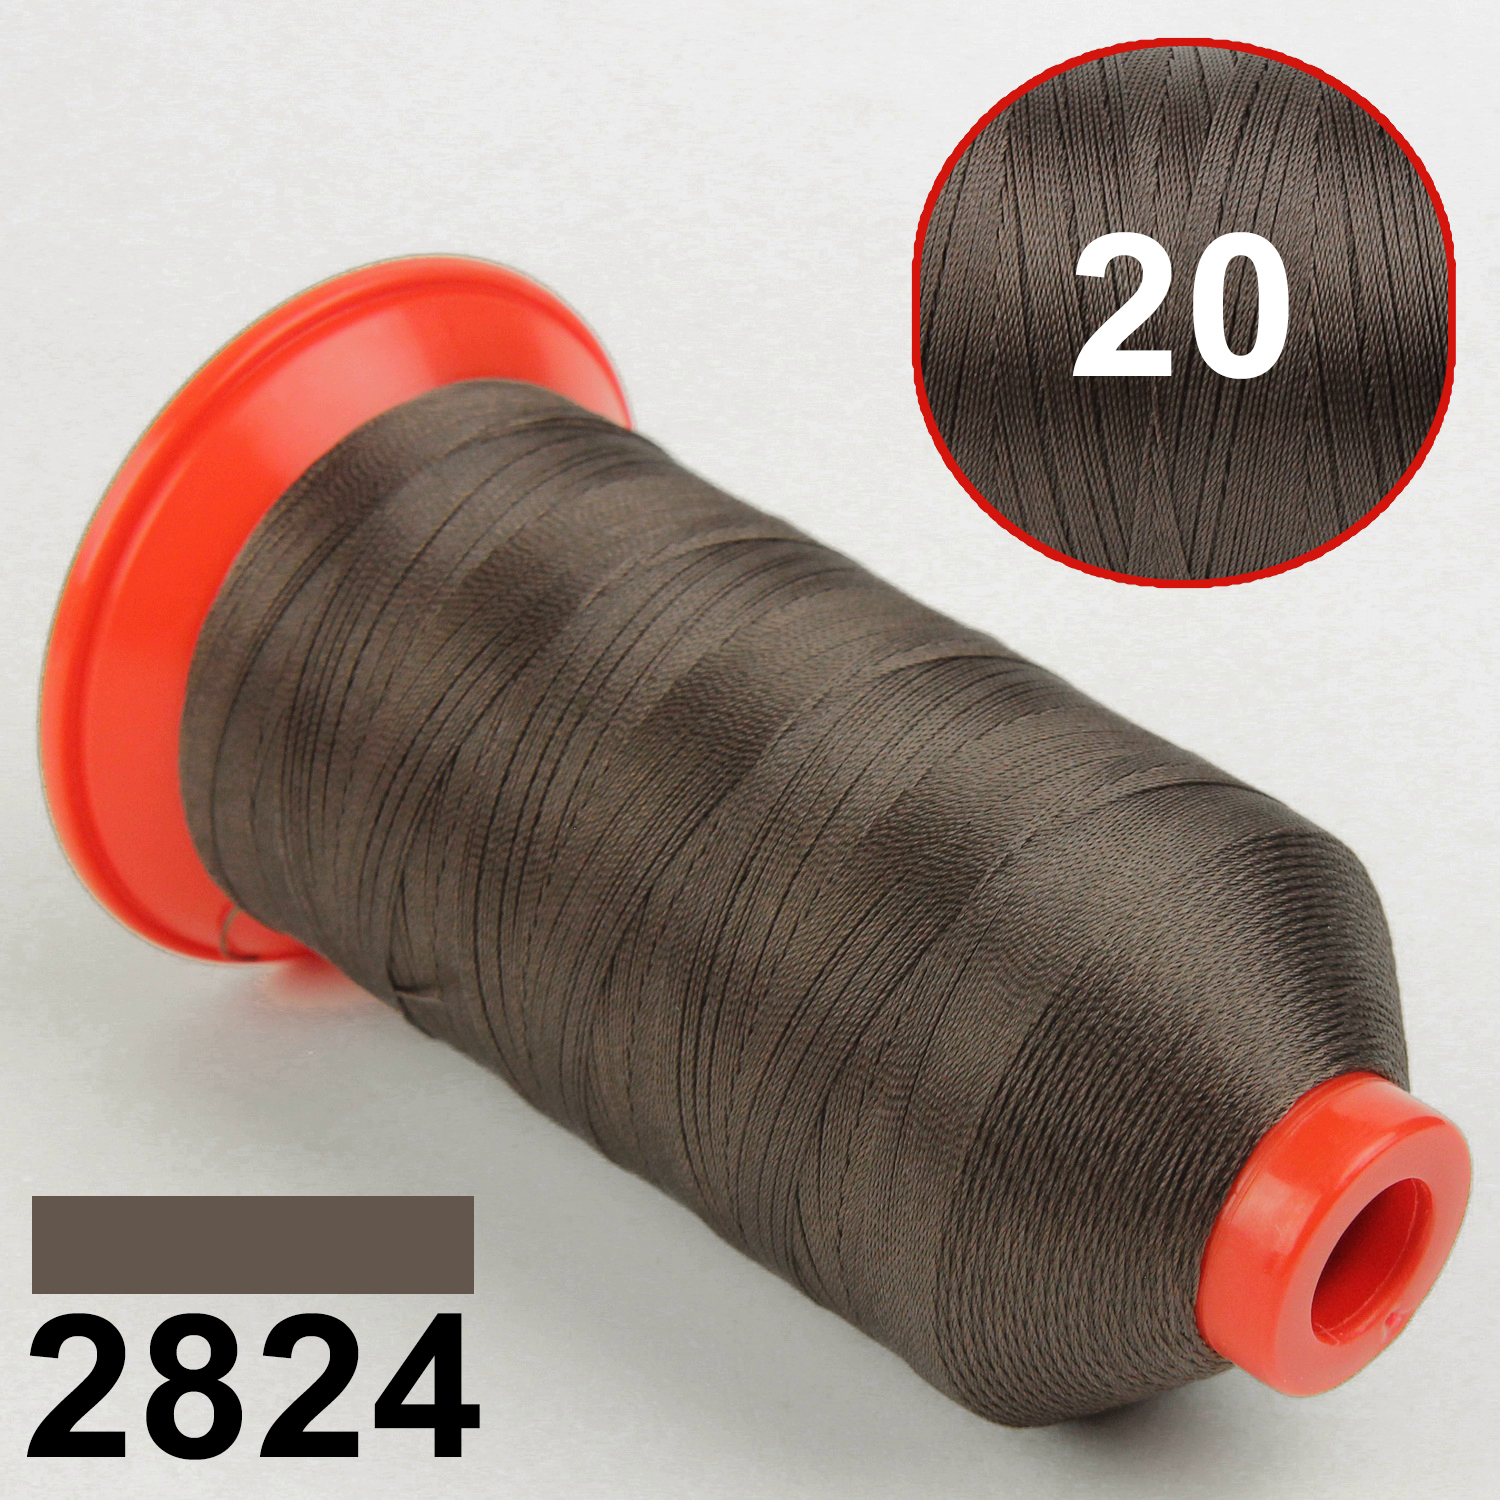 Нить POLYART(ПОЛИАРТ) N20 цвет 2824 коричневой, для пошив чехлов на автомобильные сидения и руль, 1500м детальная фотка